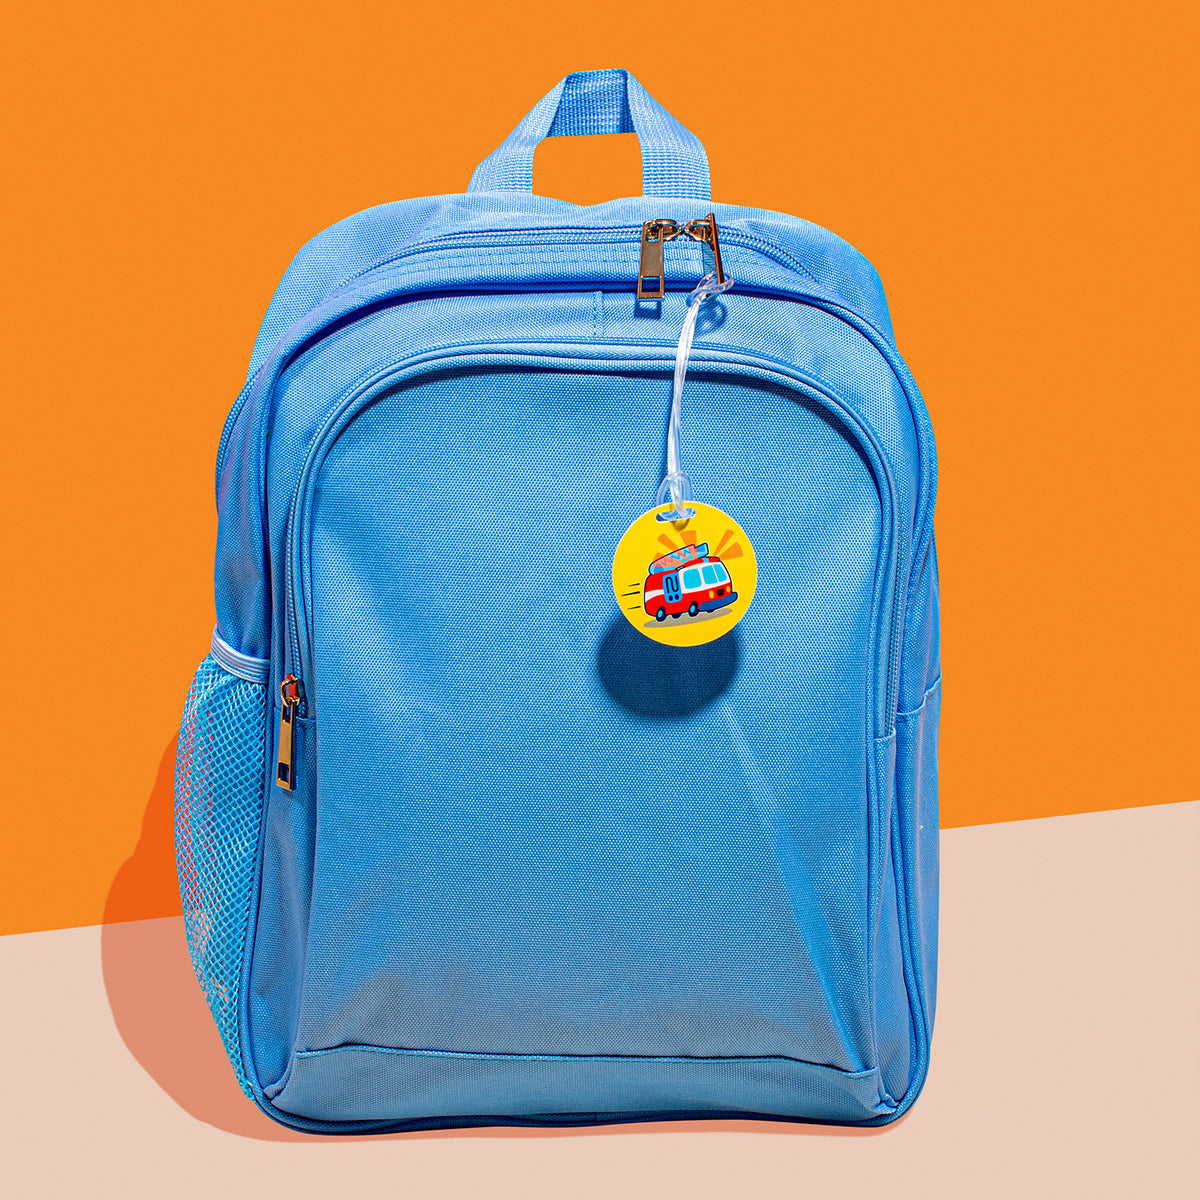 Kids School Bag Tags, Bag Tags For Kids Bags